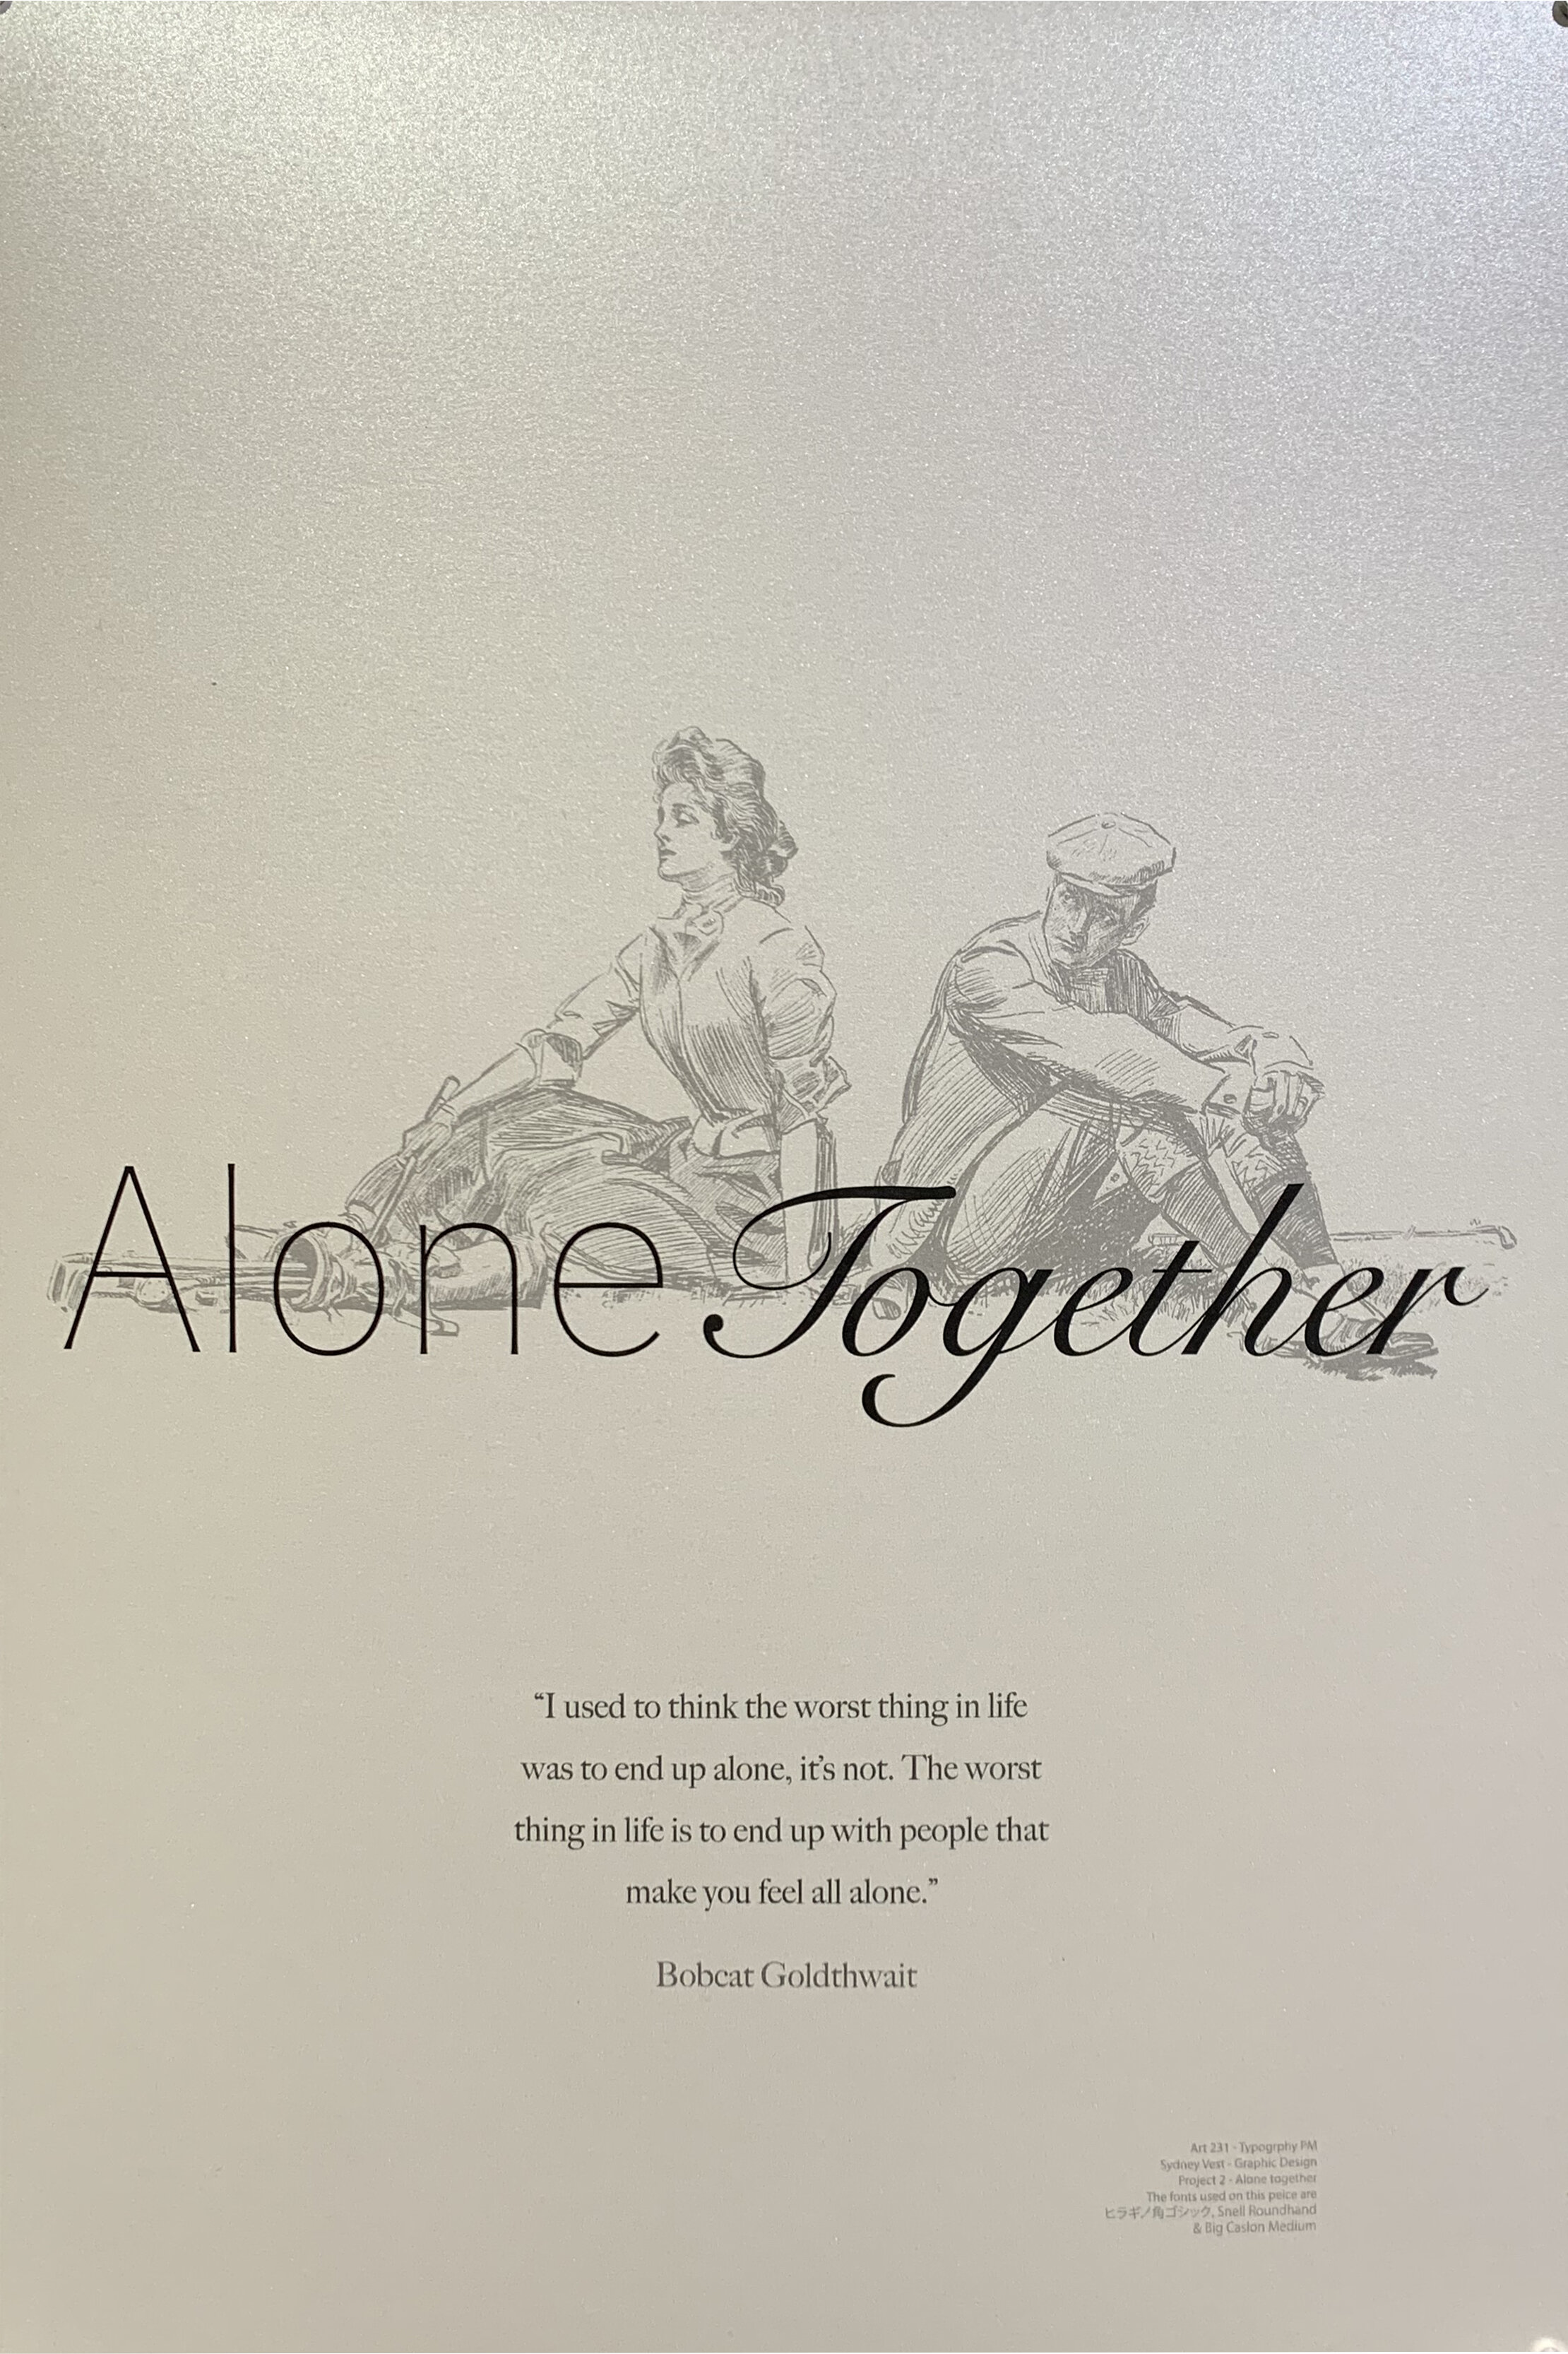 Sydney Vest, "Alone Together"